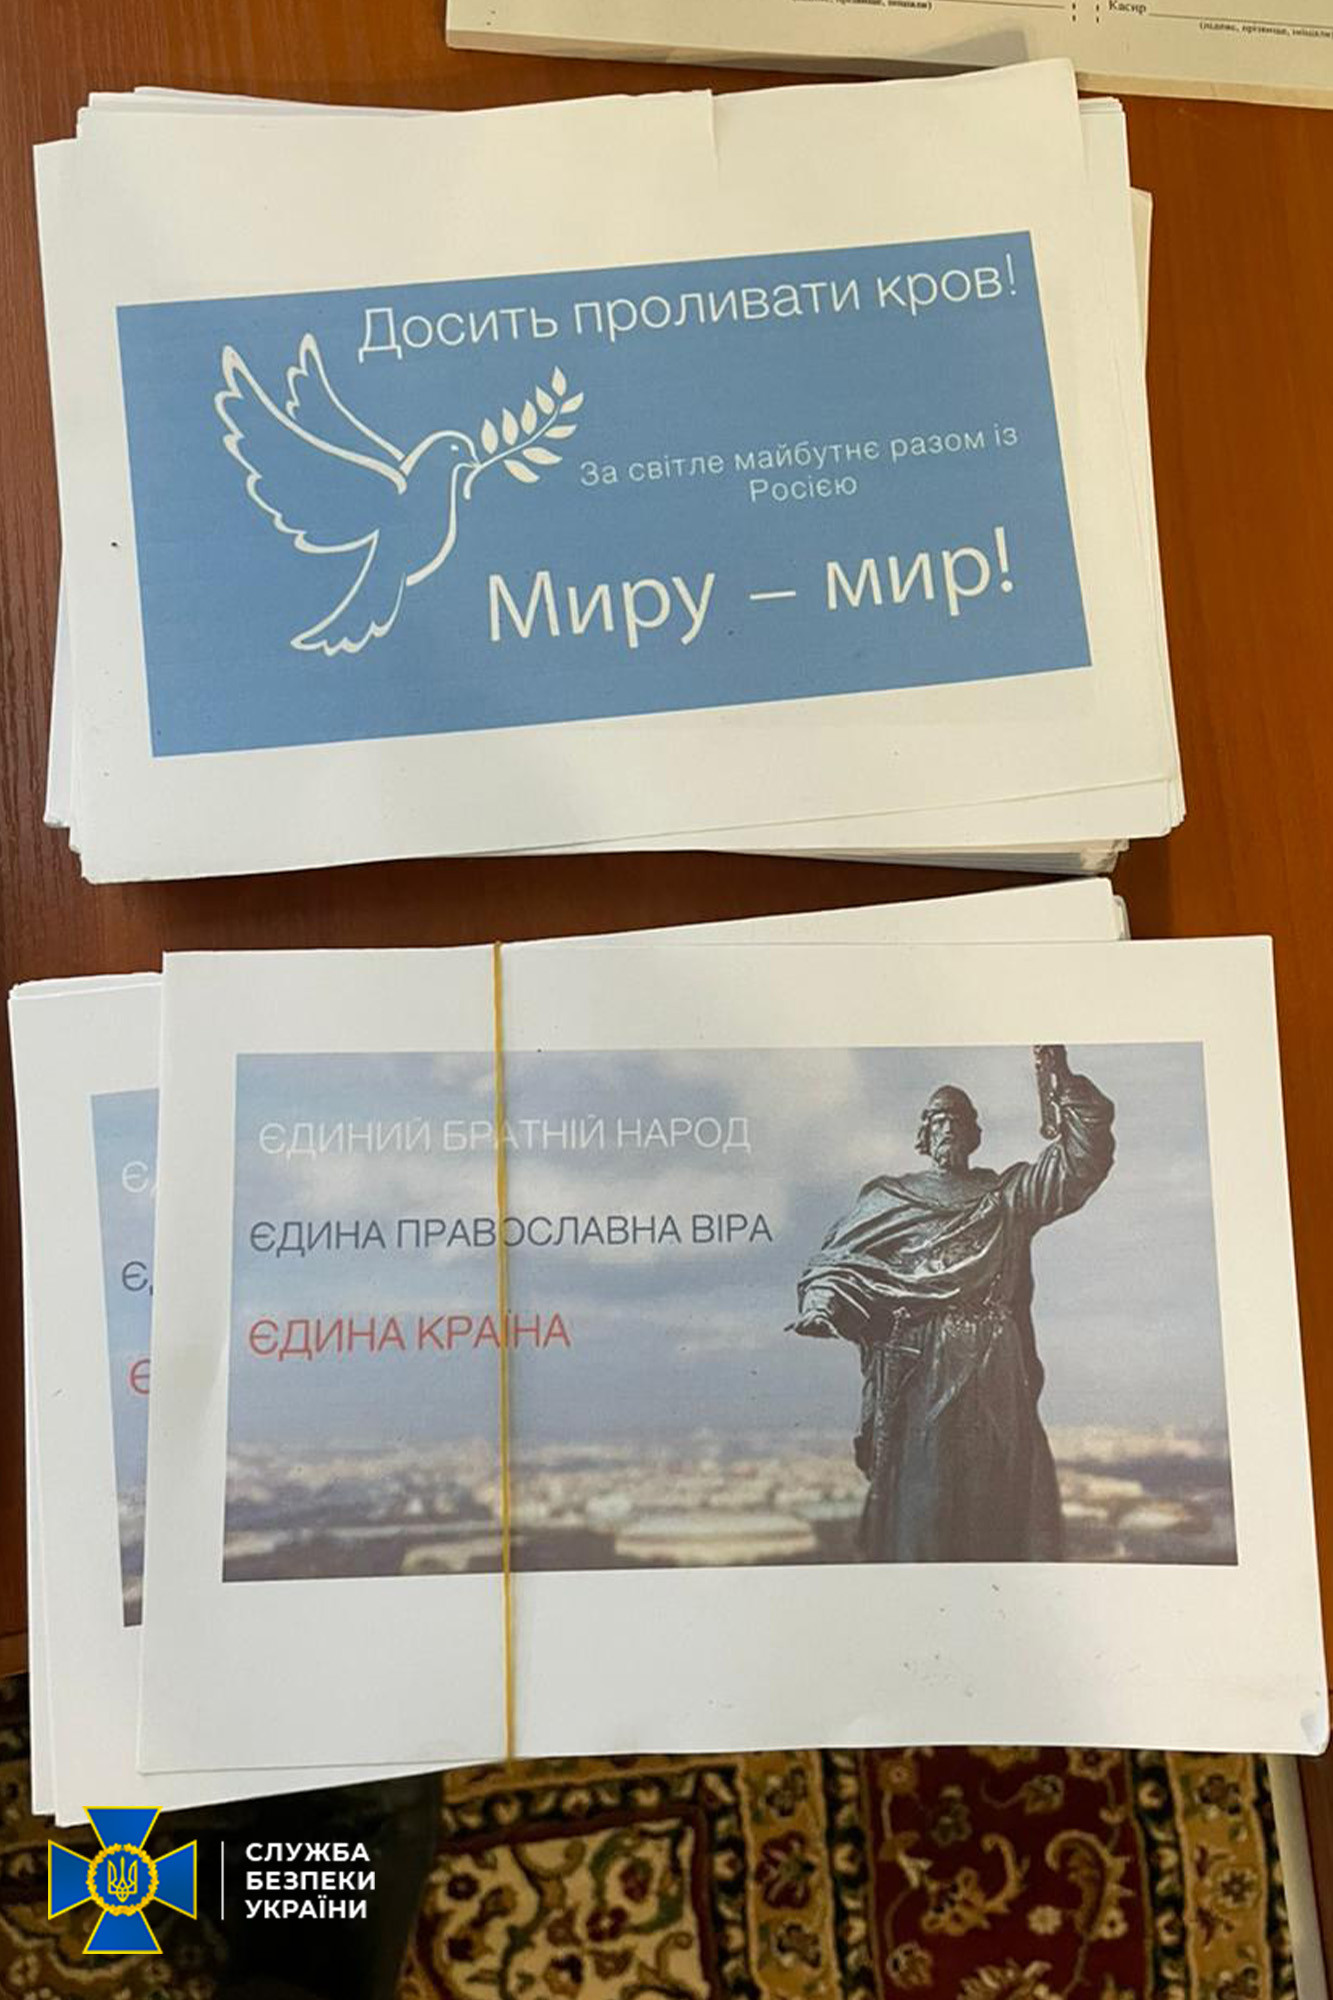 Проросійська література, паспорти СРСР і мільйони готівки - деталі обшуків у Києво-Печерській лаврі